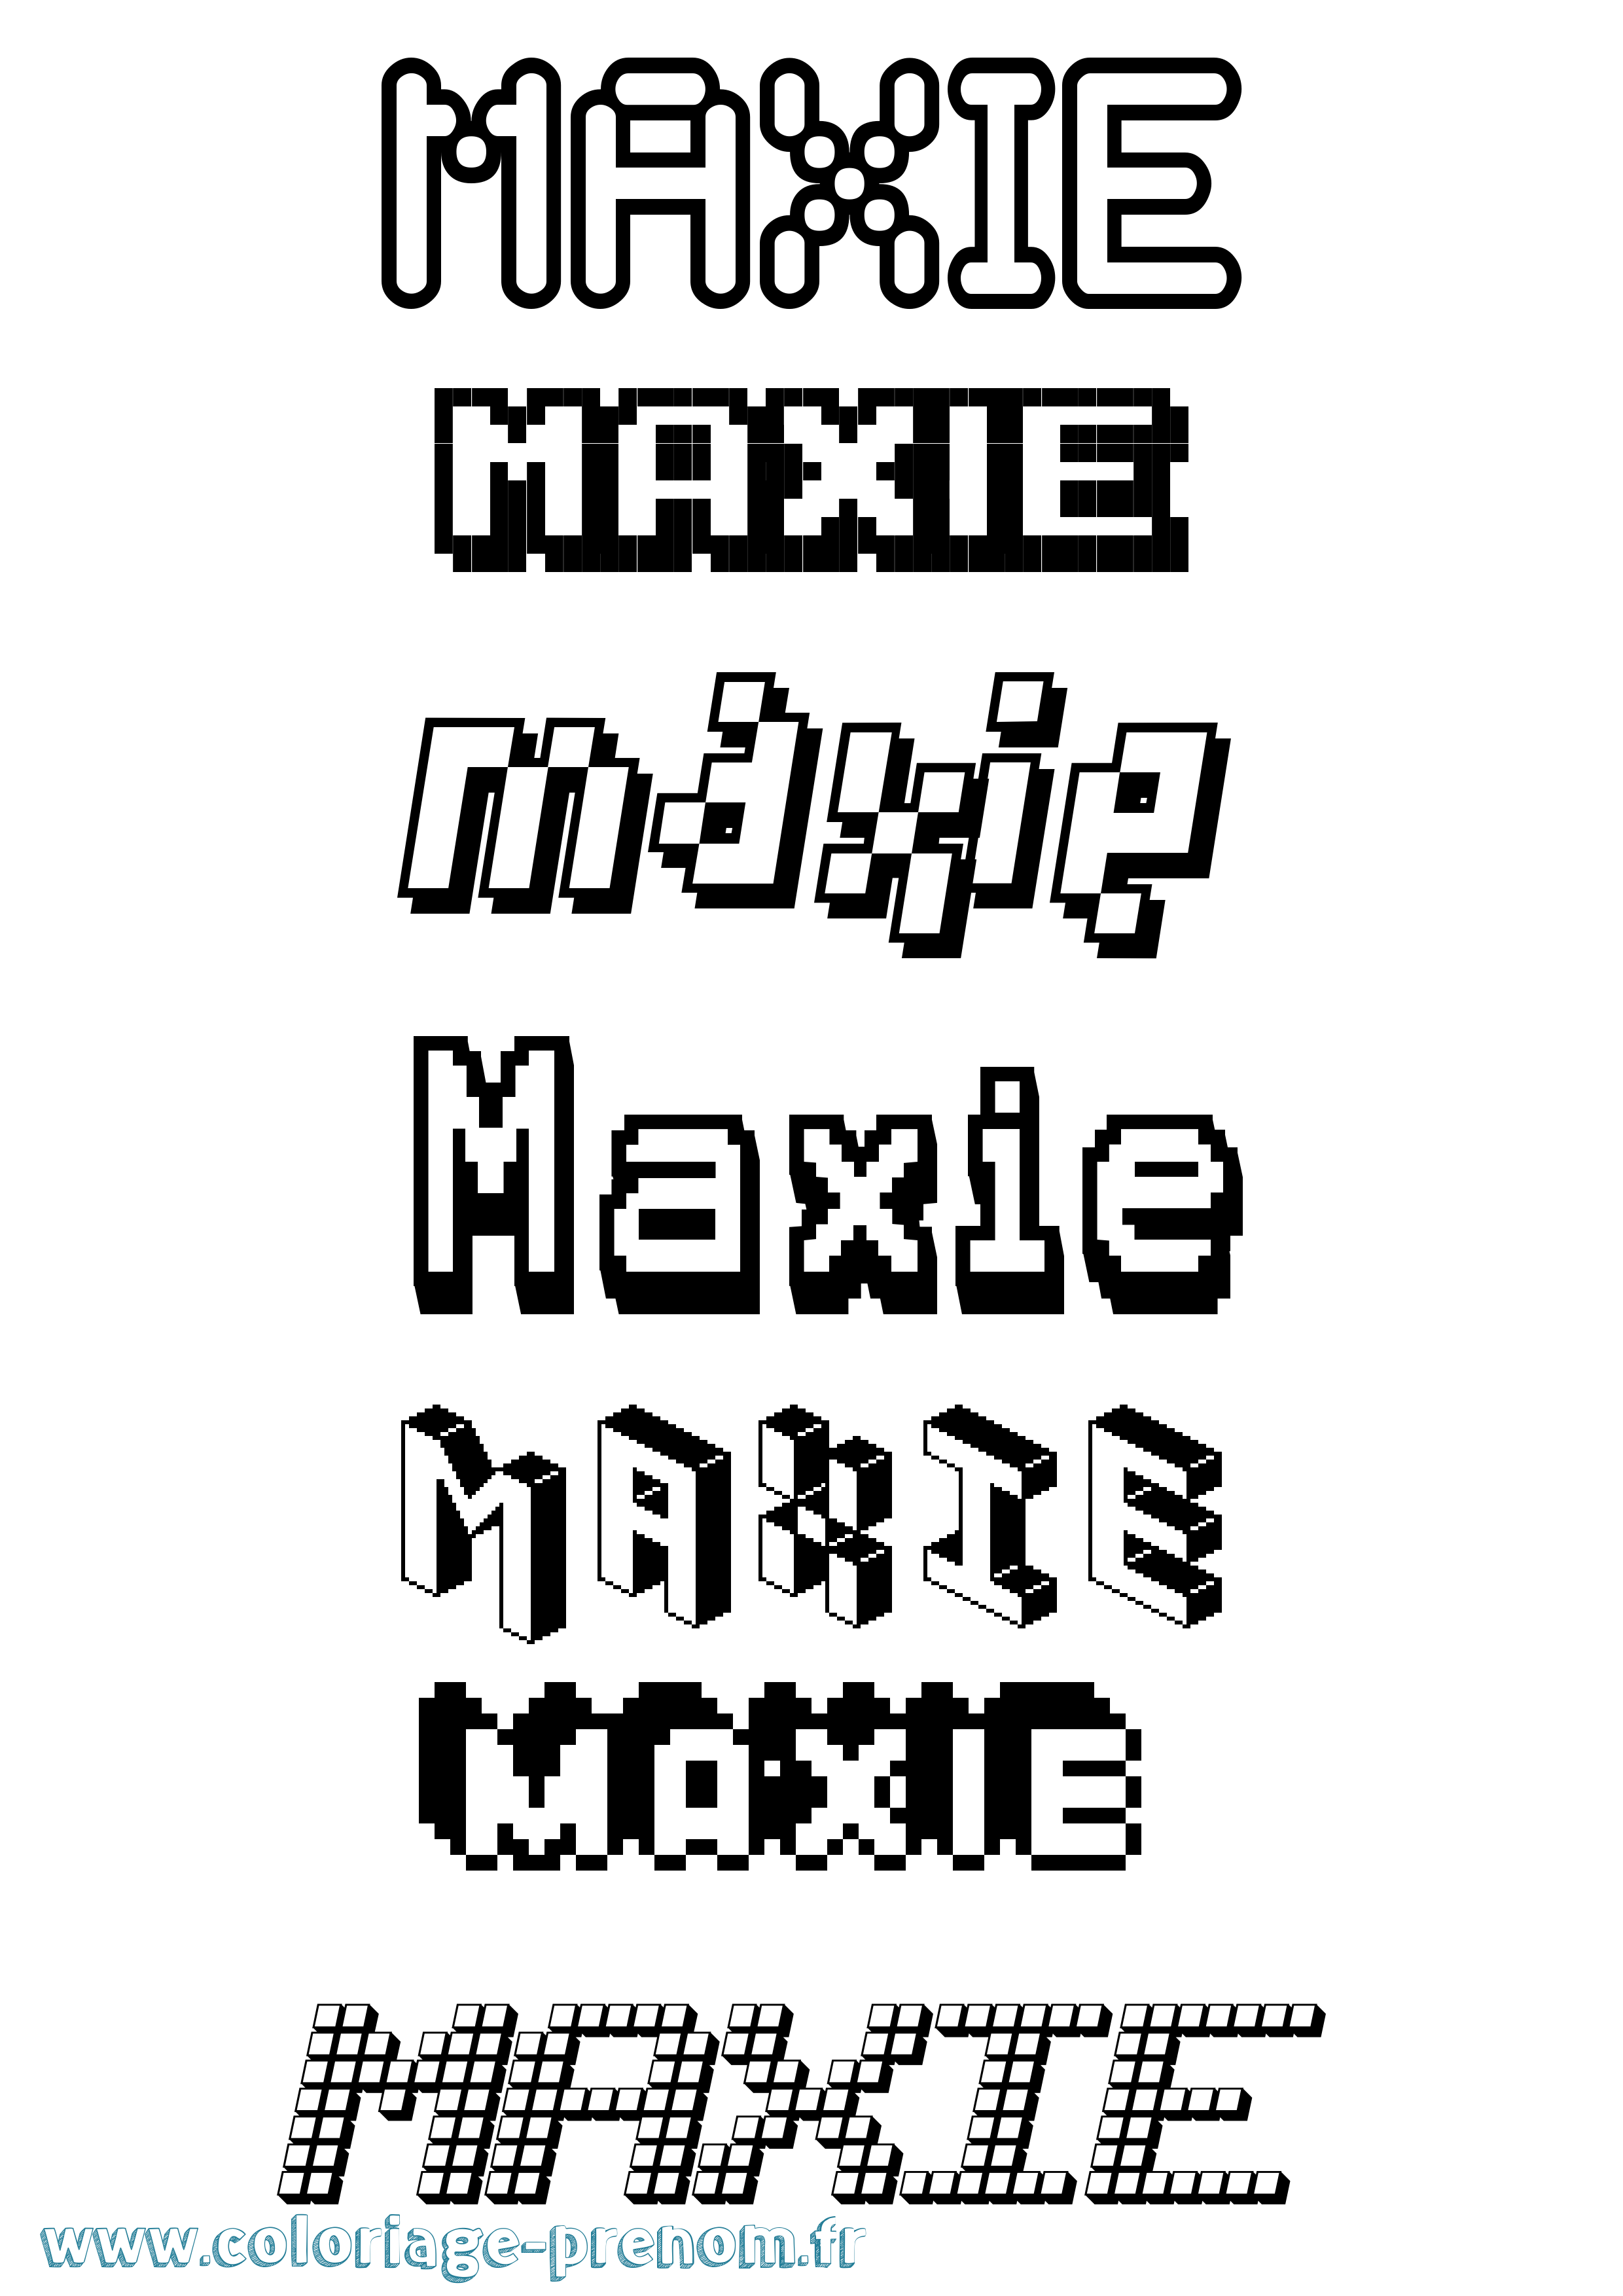 Coloriage prénom Maxie Pixel